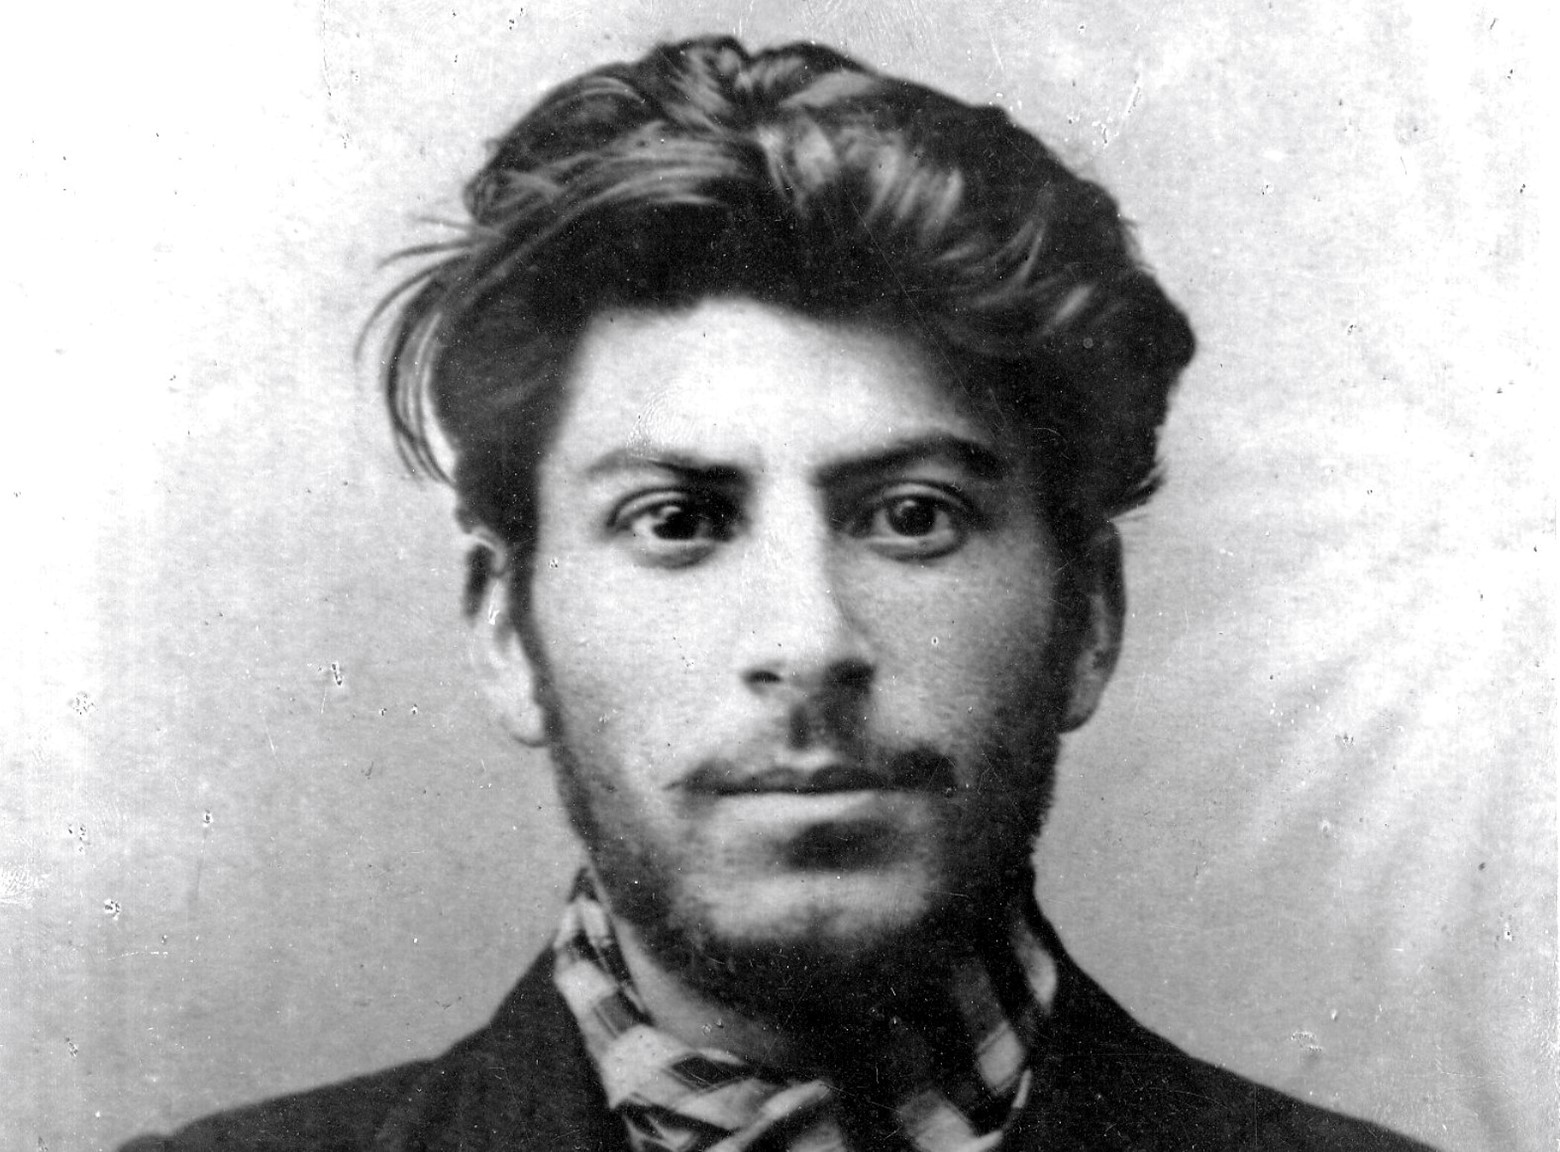 Ioseb Besarionis dze Jughashvili s-a născut la 18 decembrie 1878 în orașul Gori, Georgia. Era adesea terorizat de tatăl său abuziv și alcoolic, având o copilărie grea